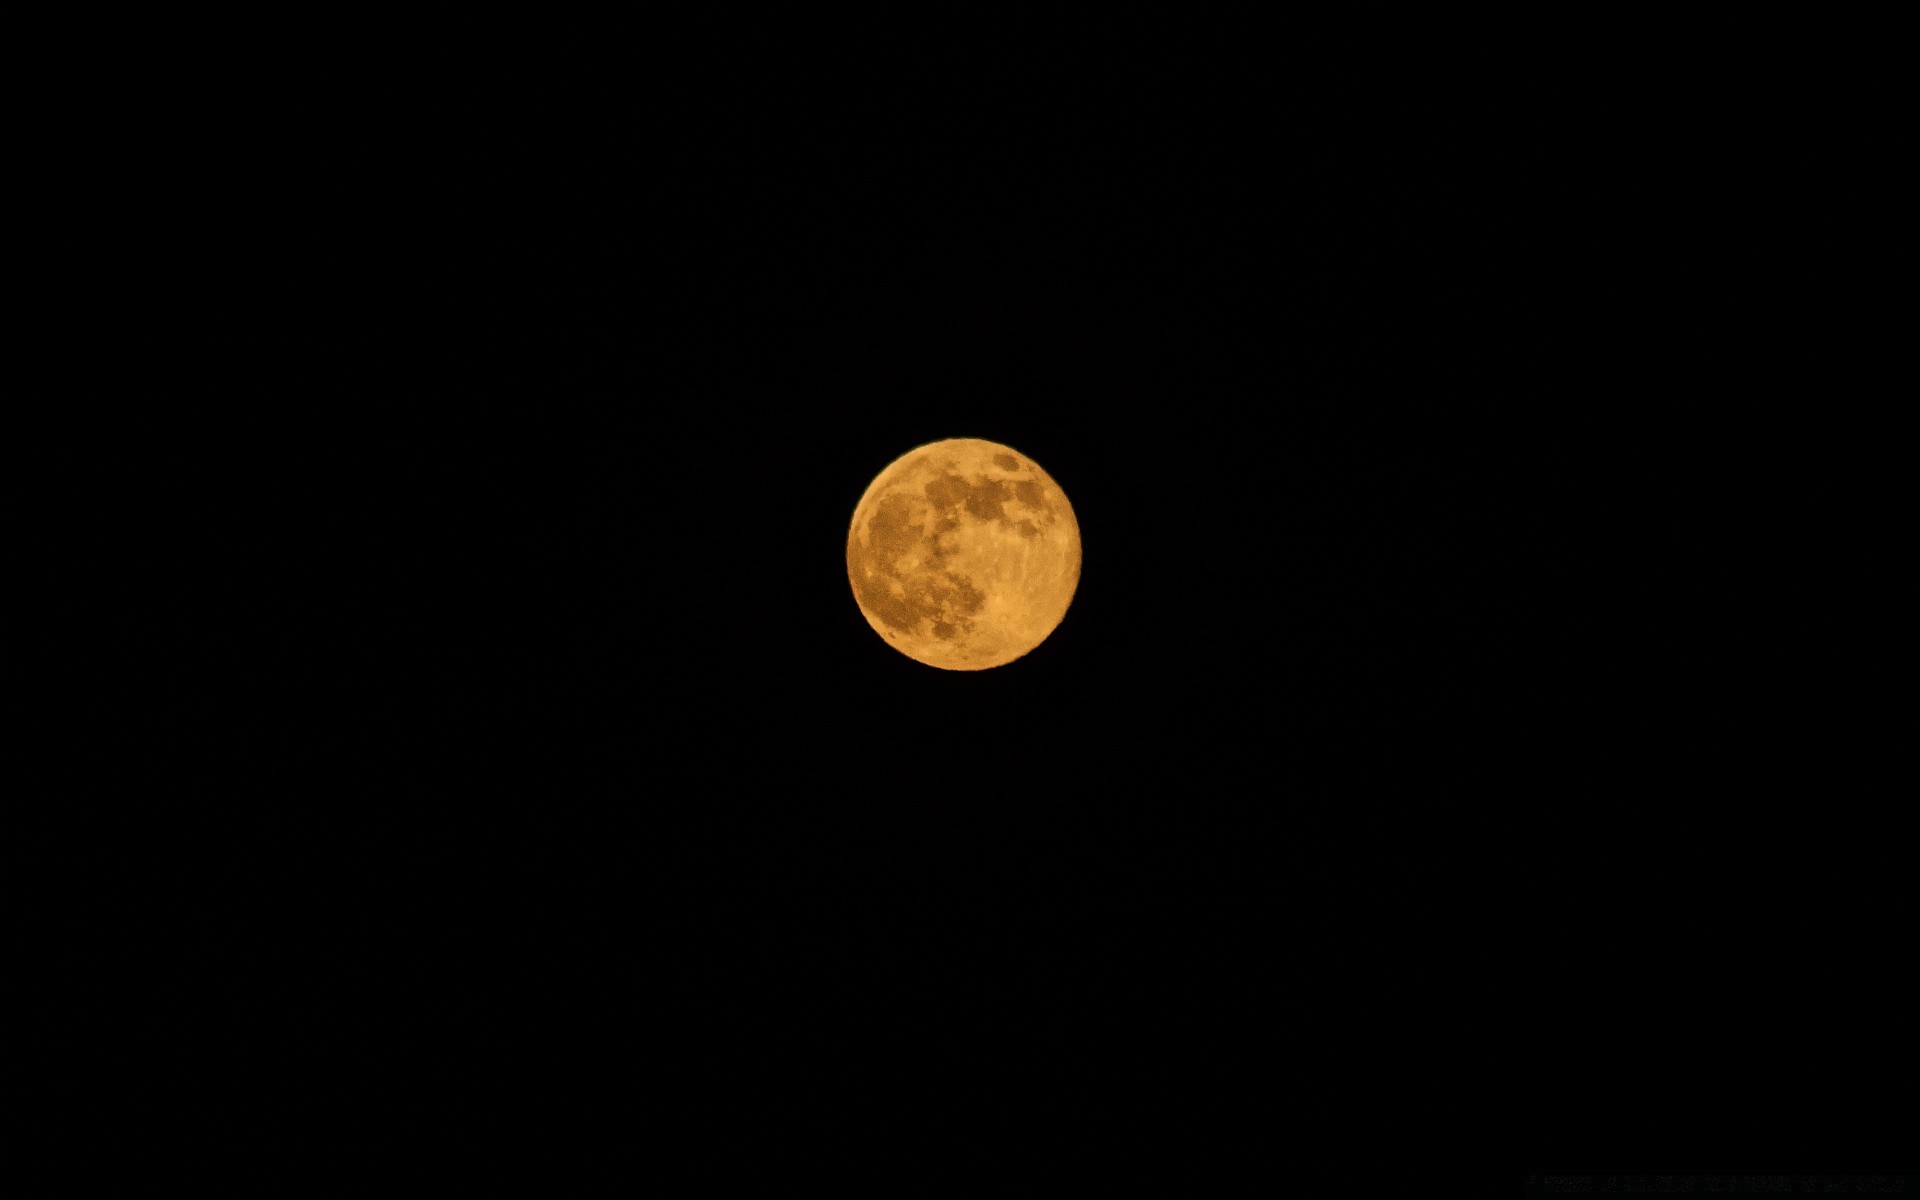 планеты луна астрономия луна затмение лунный телескоп кратер полумесяц полная луна астрология рабочего стола темный спутниковое планеты аполлон небо космос пространство фаза